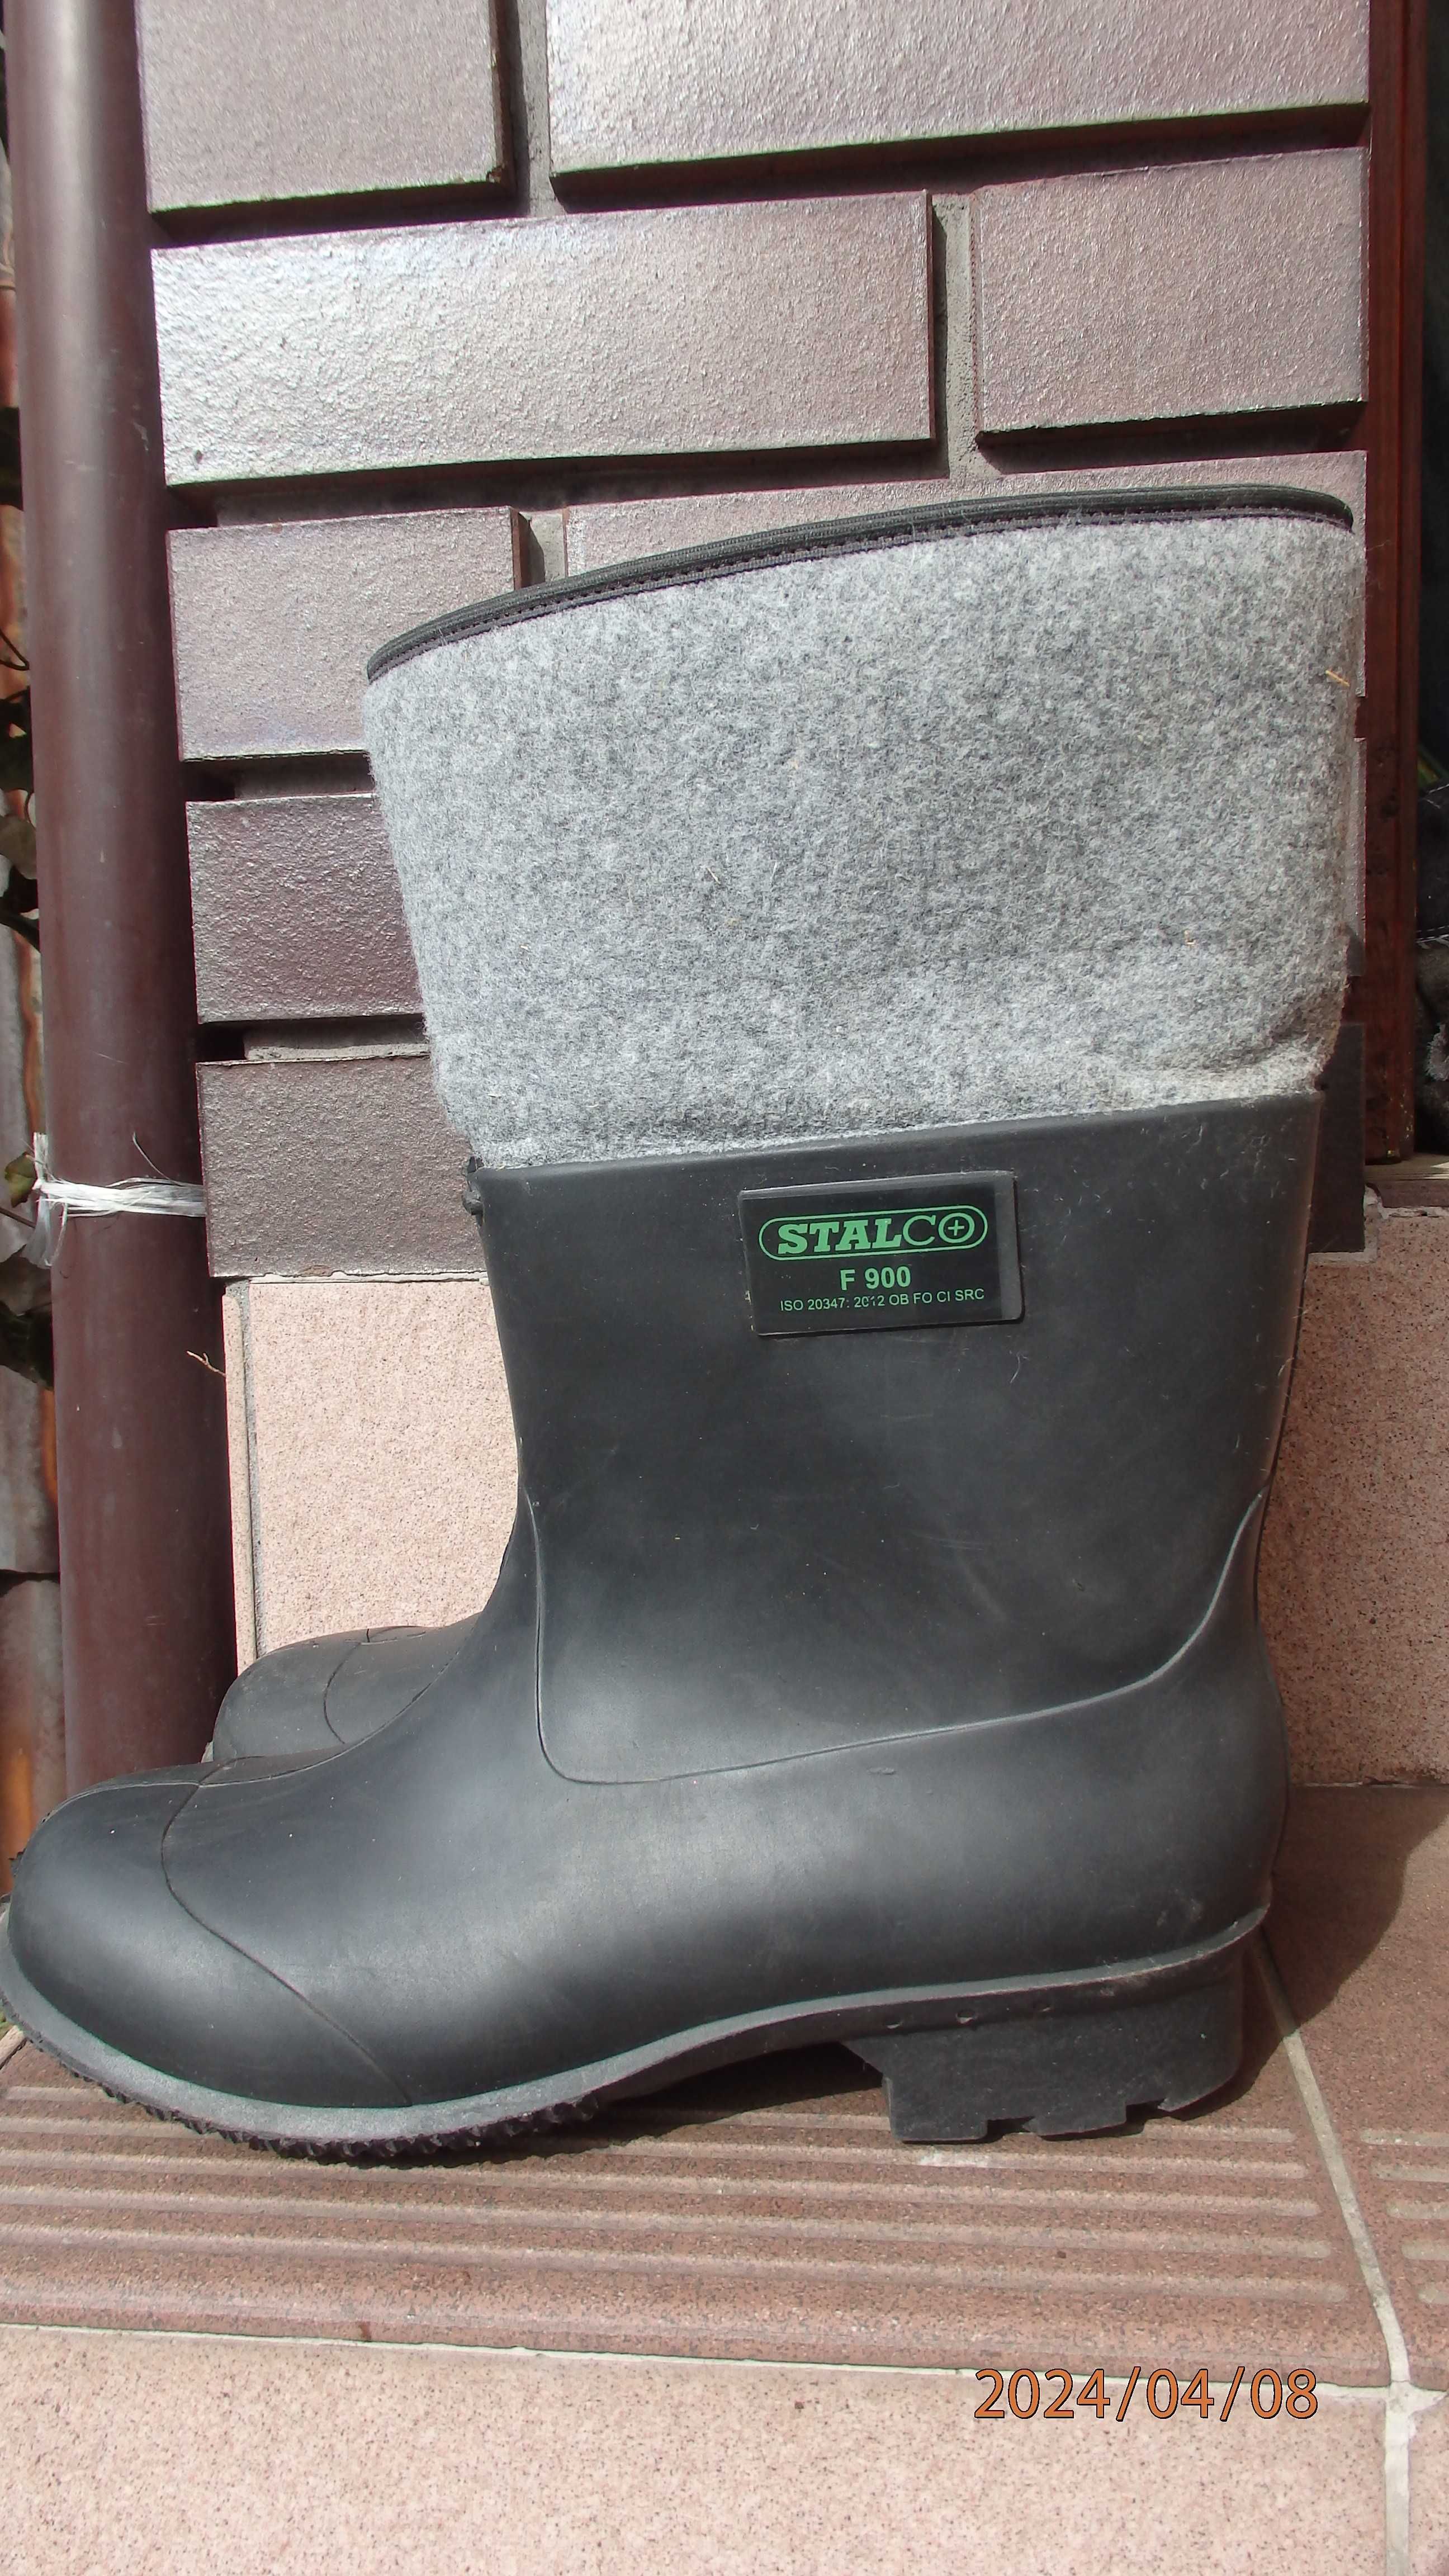 Buty  rolnicze - tzw. Gumofilce firmy Stalco 900